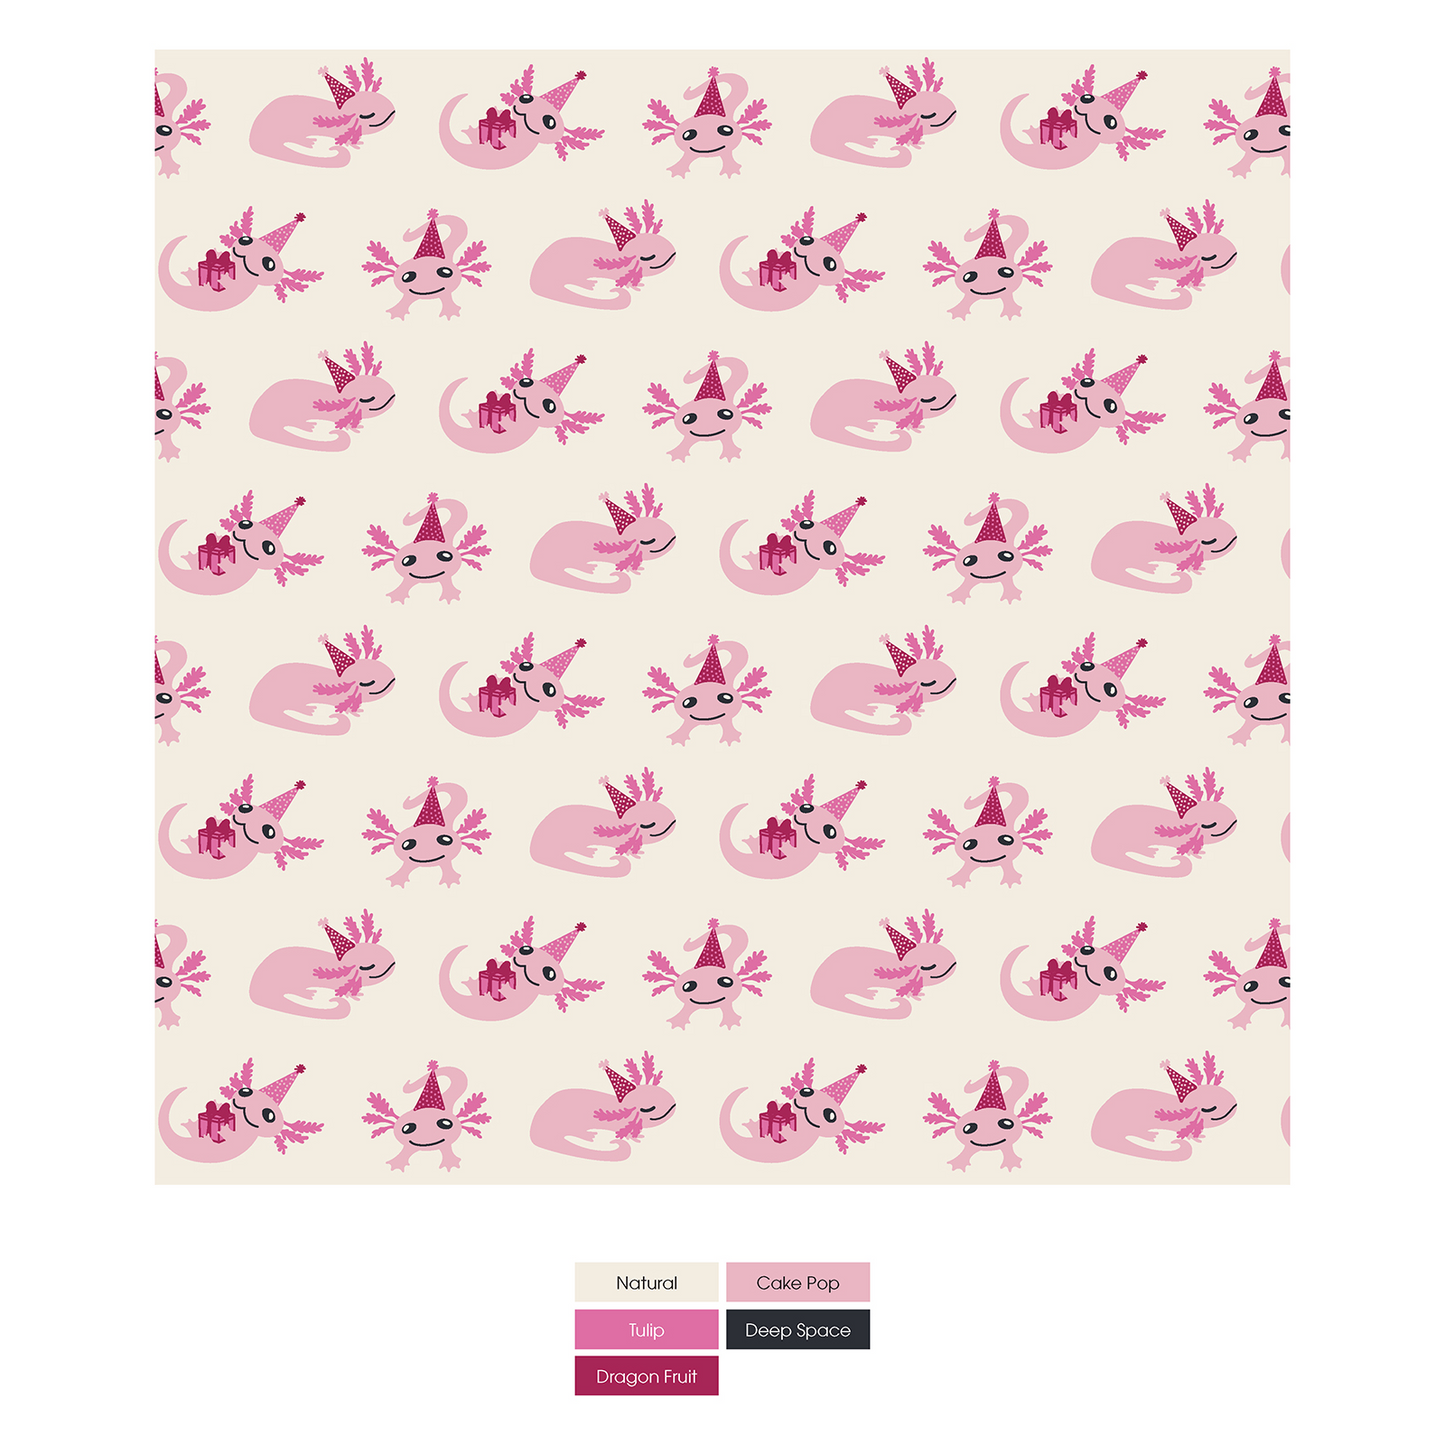 Natural Axolotl Party Short Sleeve Graphic Tee Pajama Set